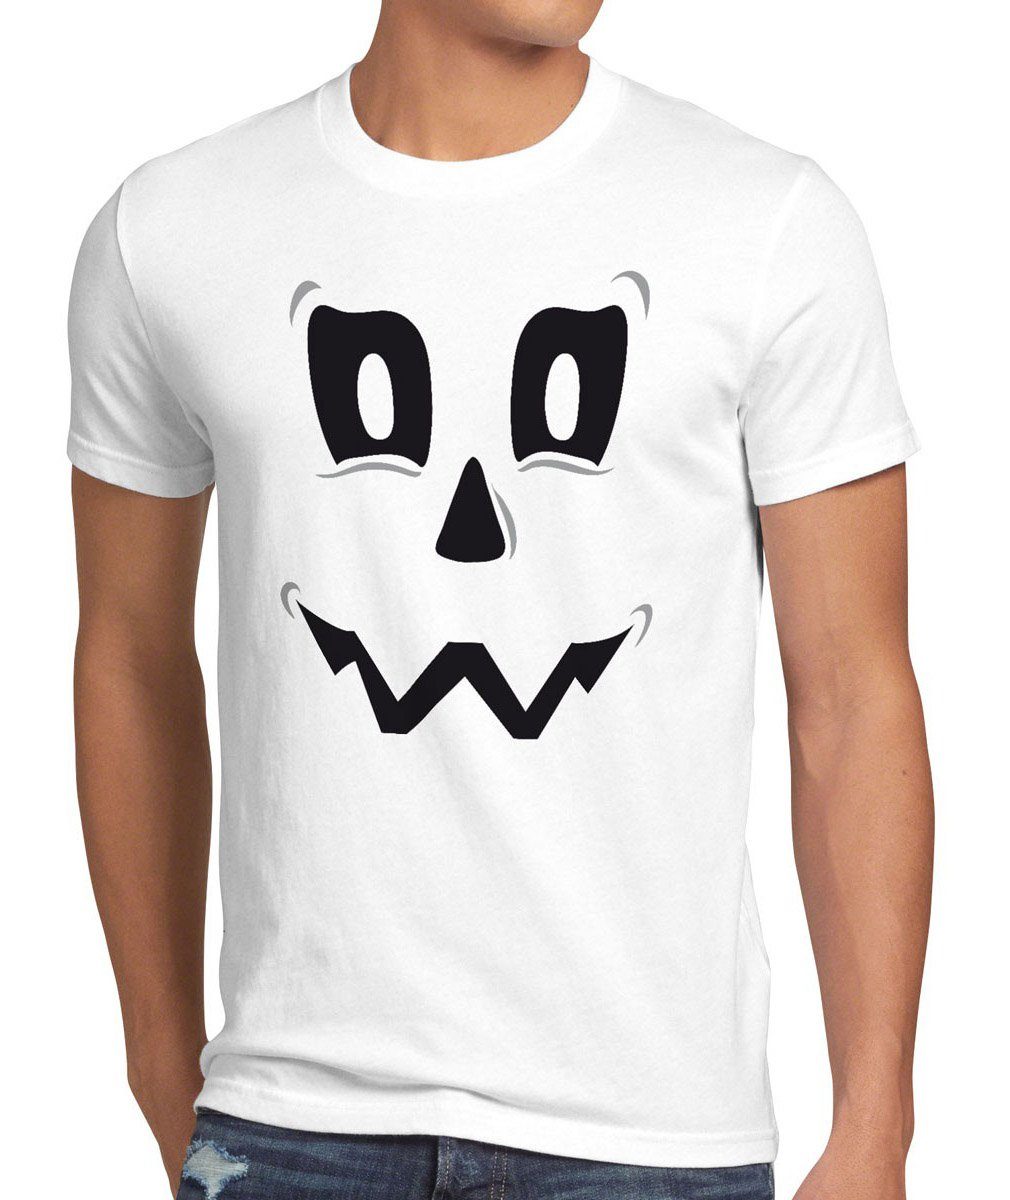 style3 Print-Shirt Herren T-Shirt Spuk Geist Halloween Fasching Kostüm Kürbis-Kopf Party Funshirt weiß